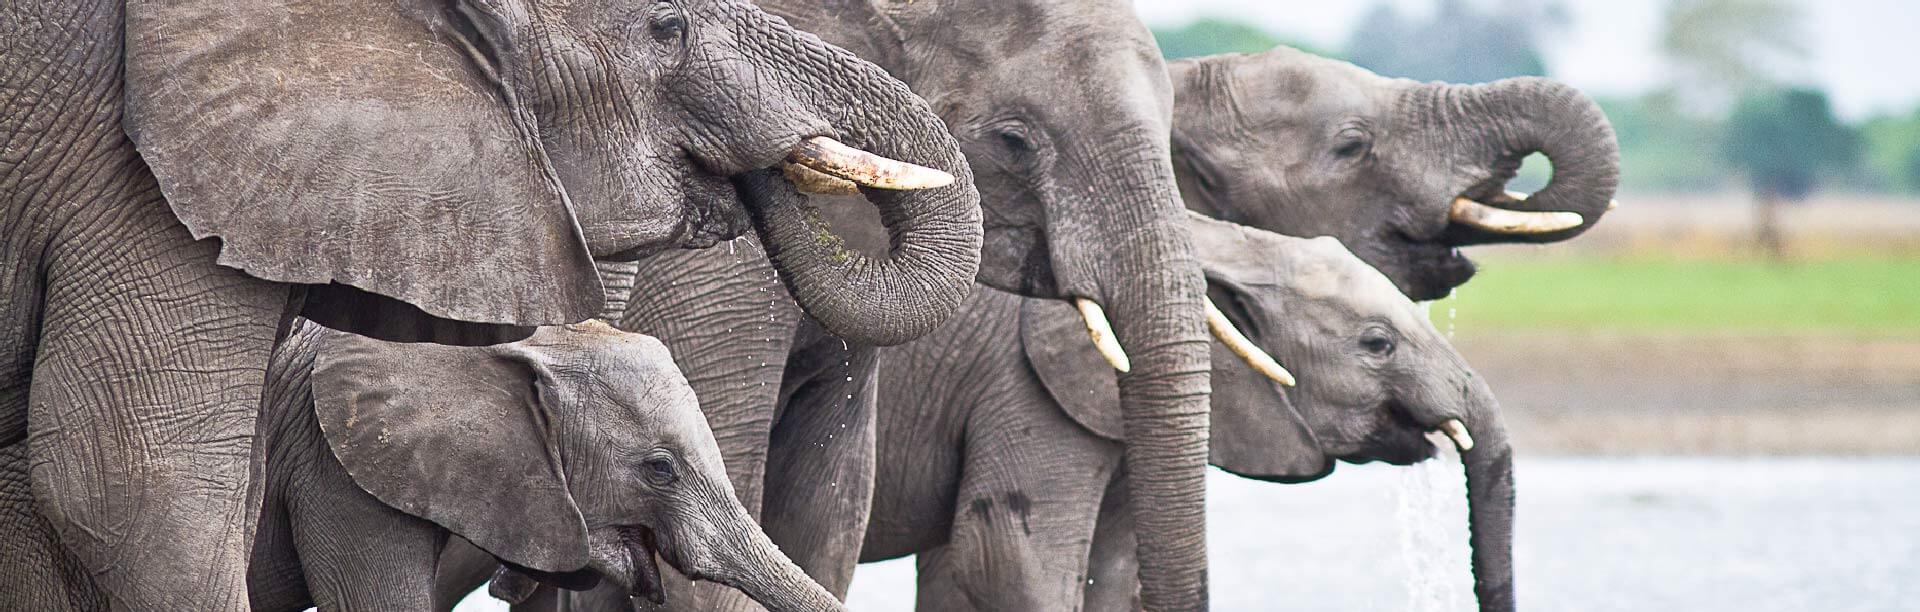 Viaggio-Zambia-e-Malawi-natura-nei-parchi-nazionali-africani-liwonde-parco-nazionale-elefanti